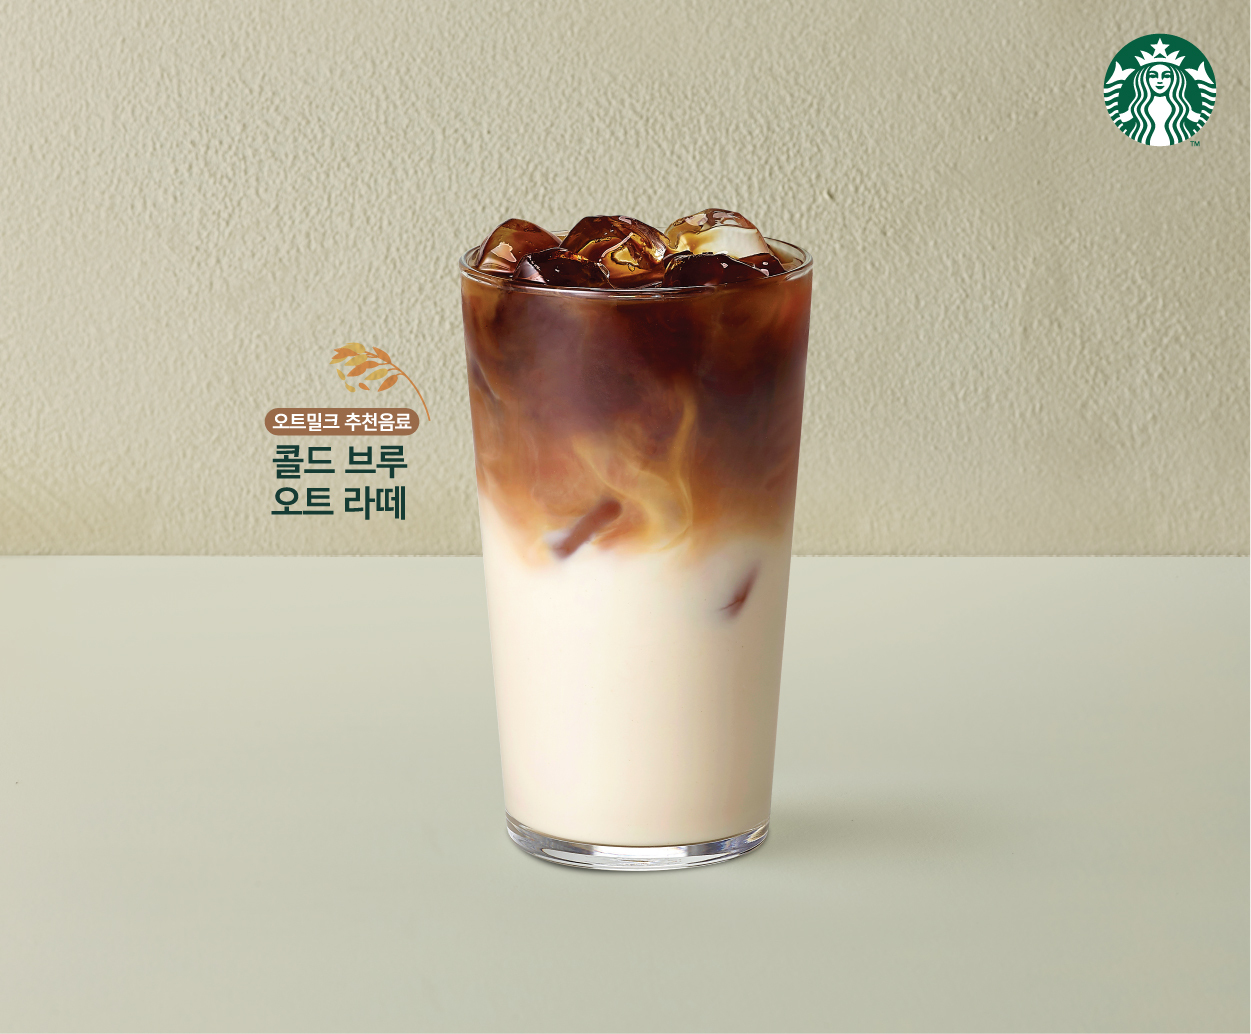 Cold brew oat millk latte from Starbucks (Starbucks Korea)